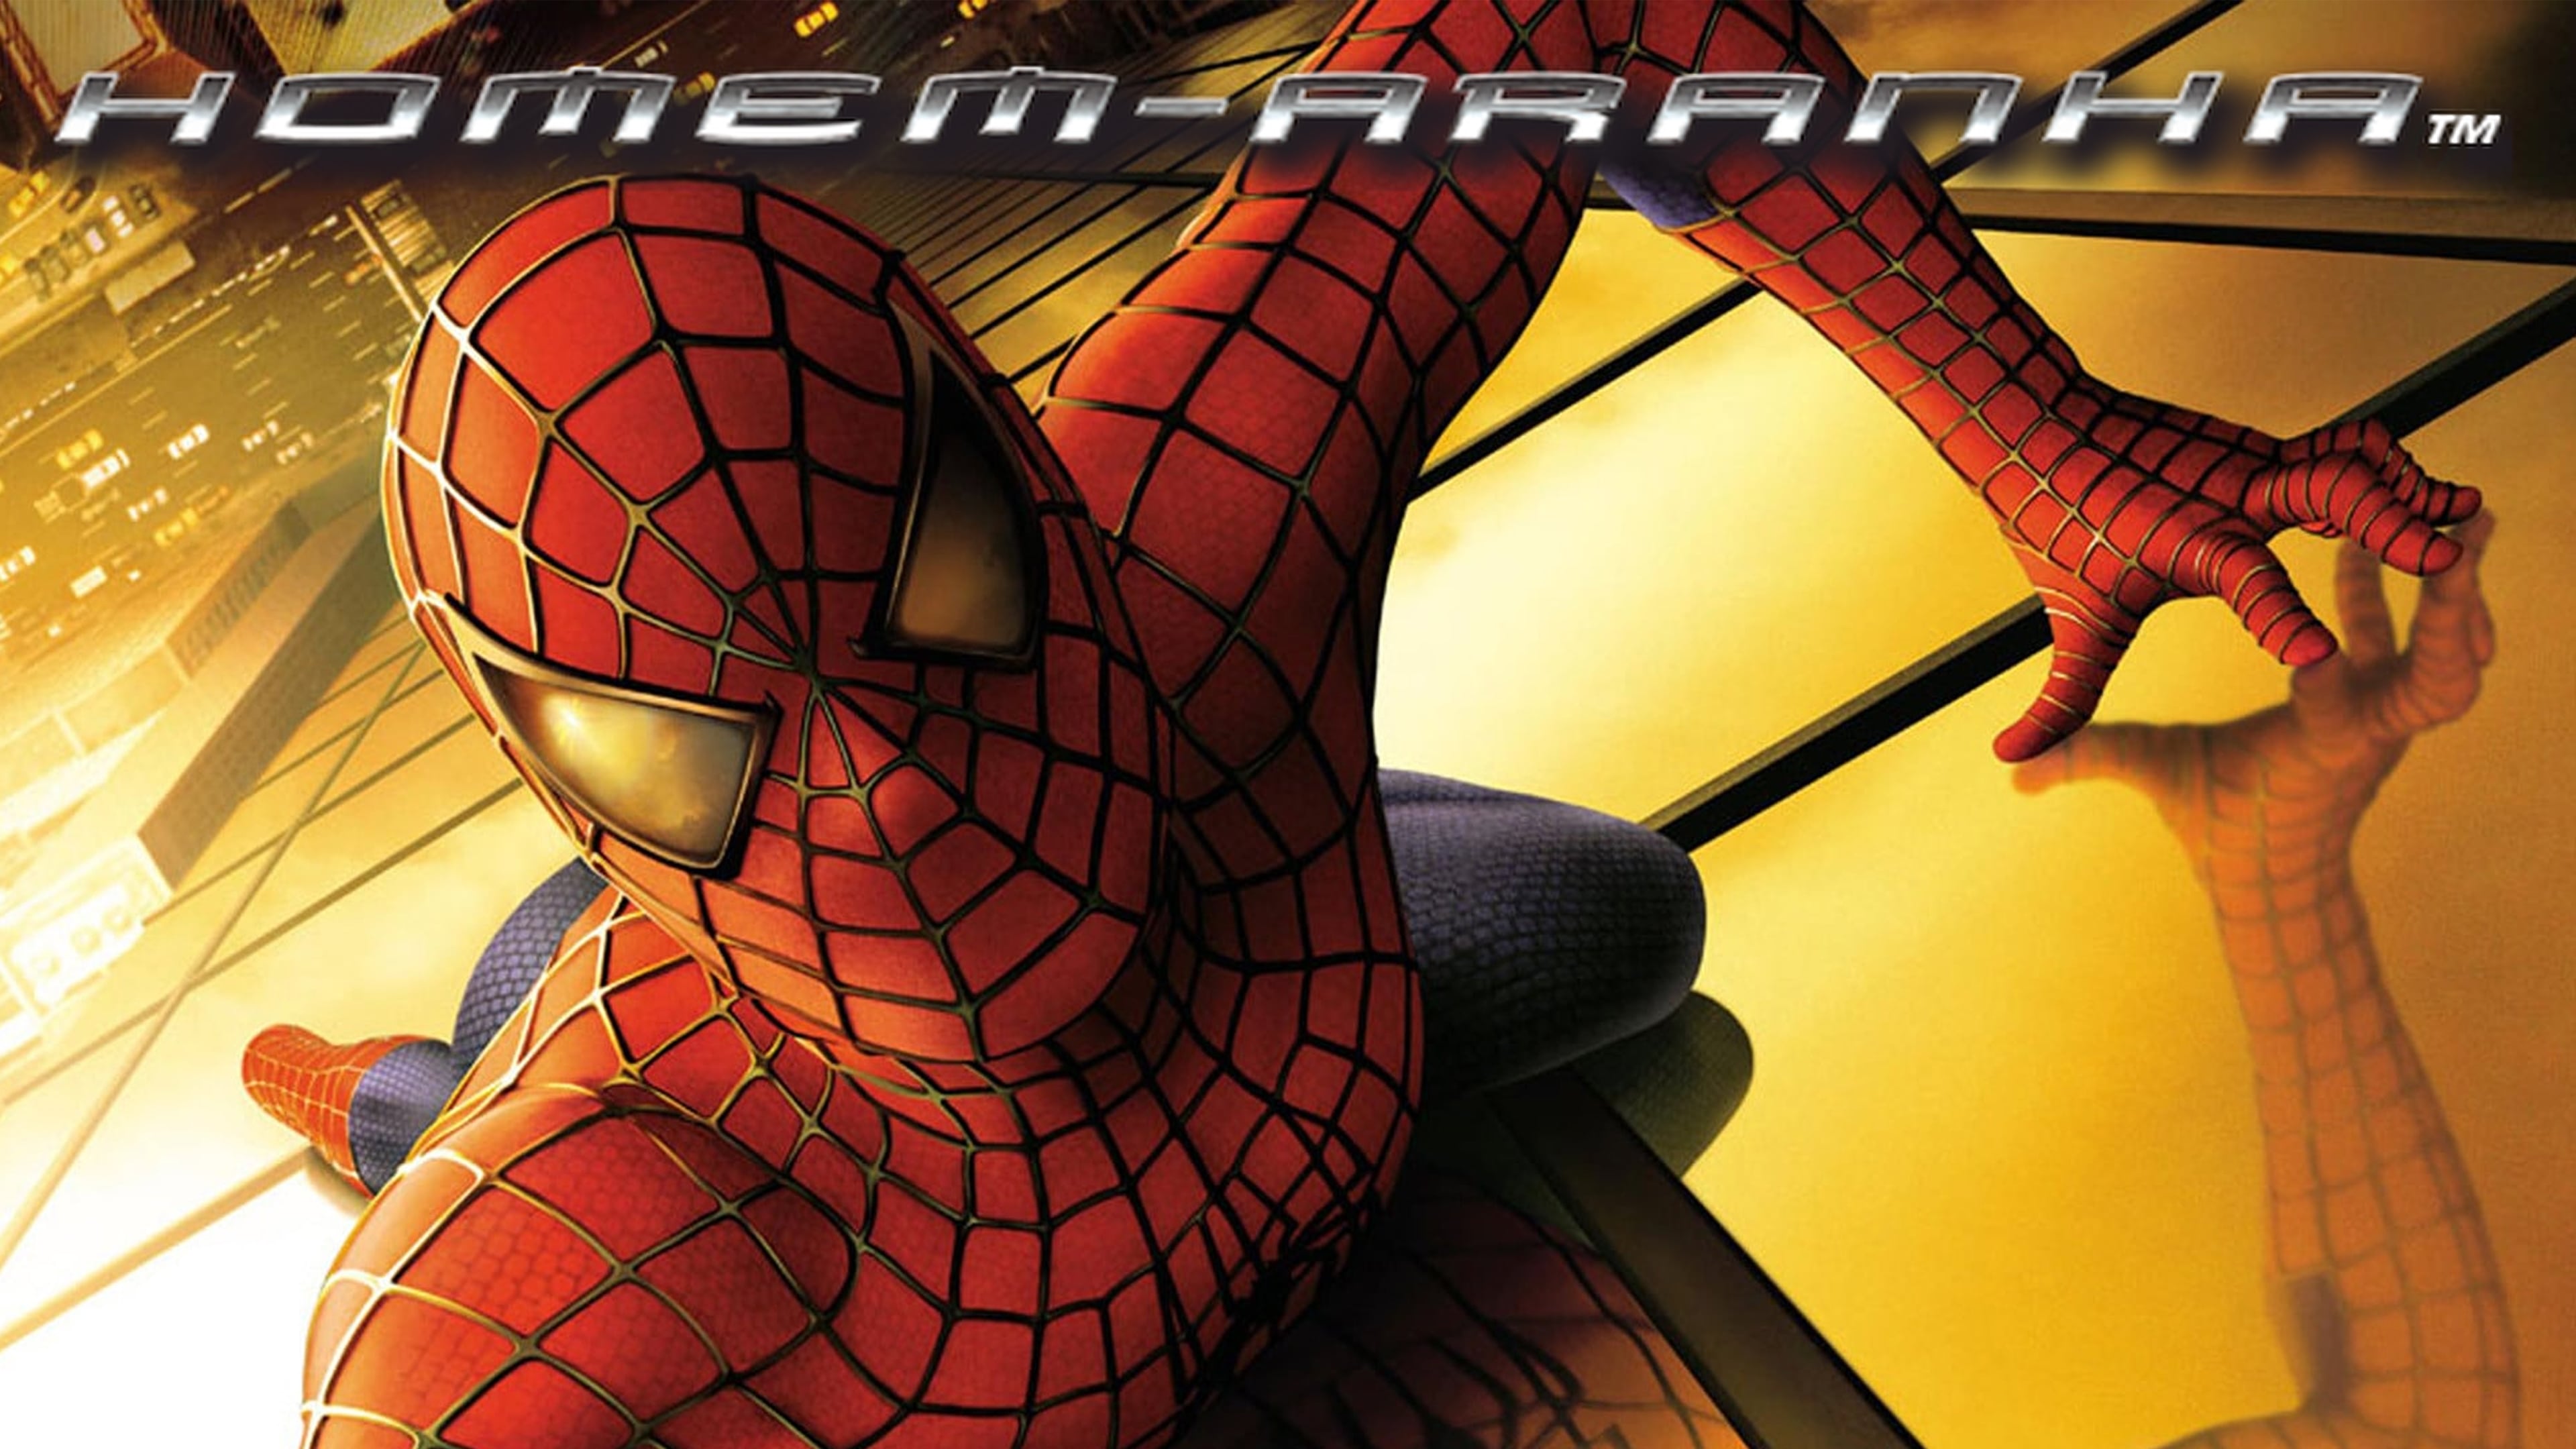 Spider-Man (2002) - Imágenes de fondo — The Movie Database (TMDB)